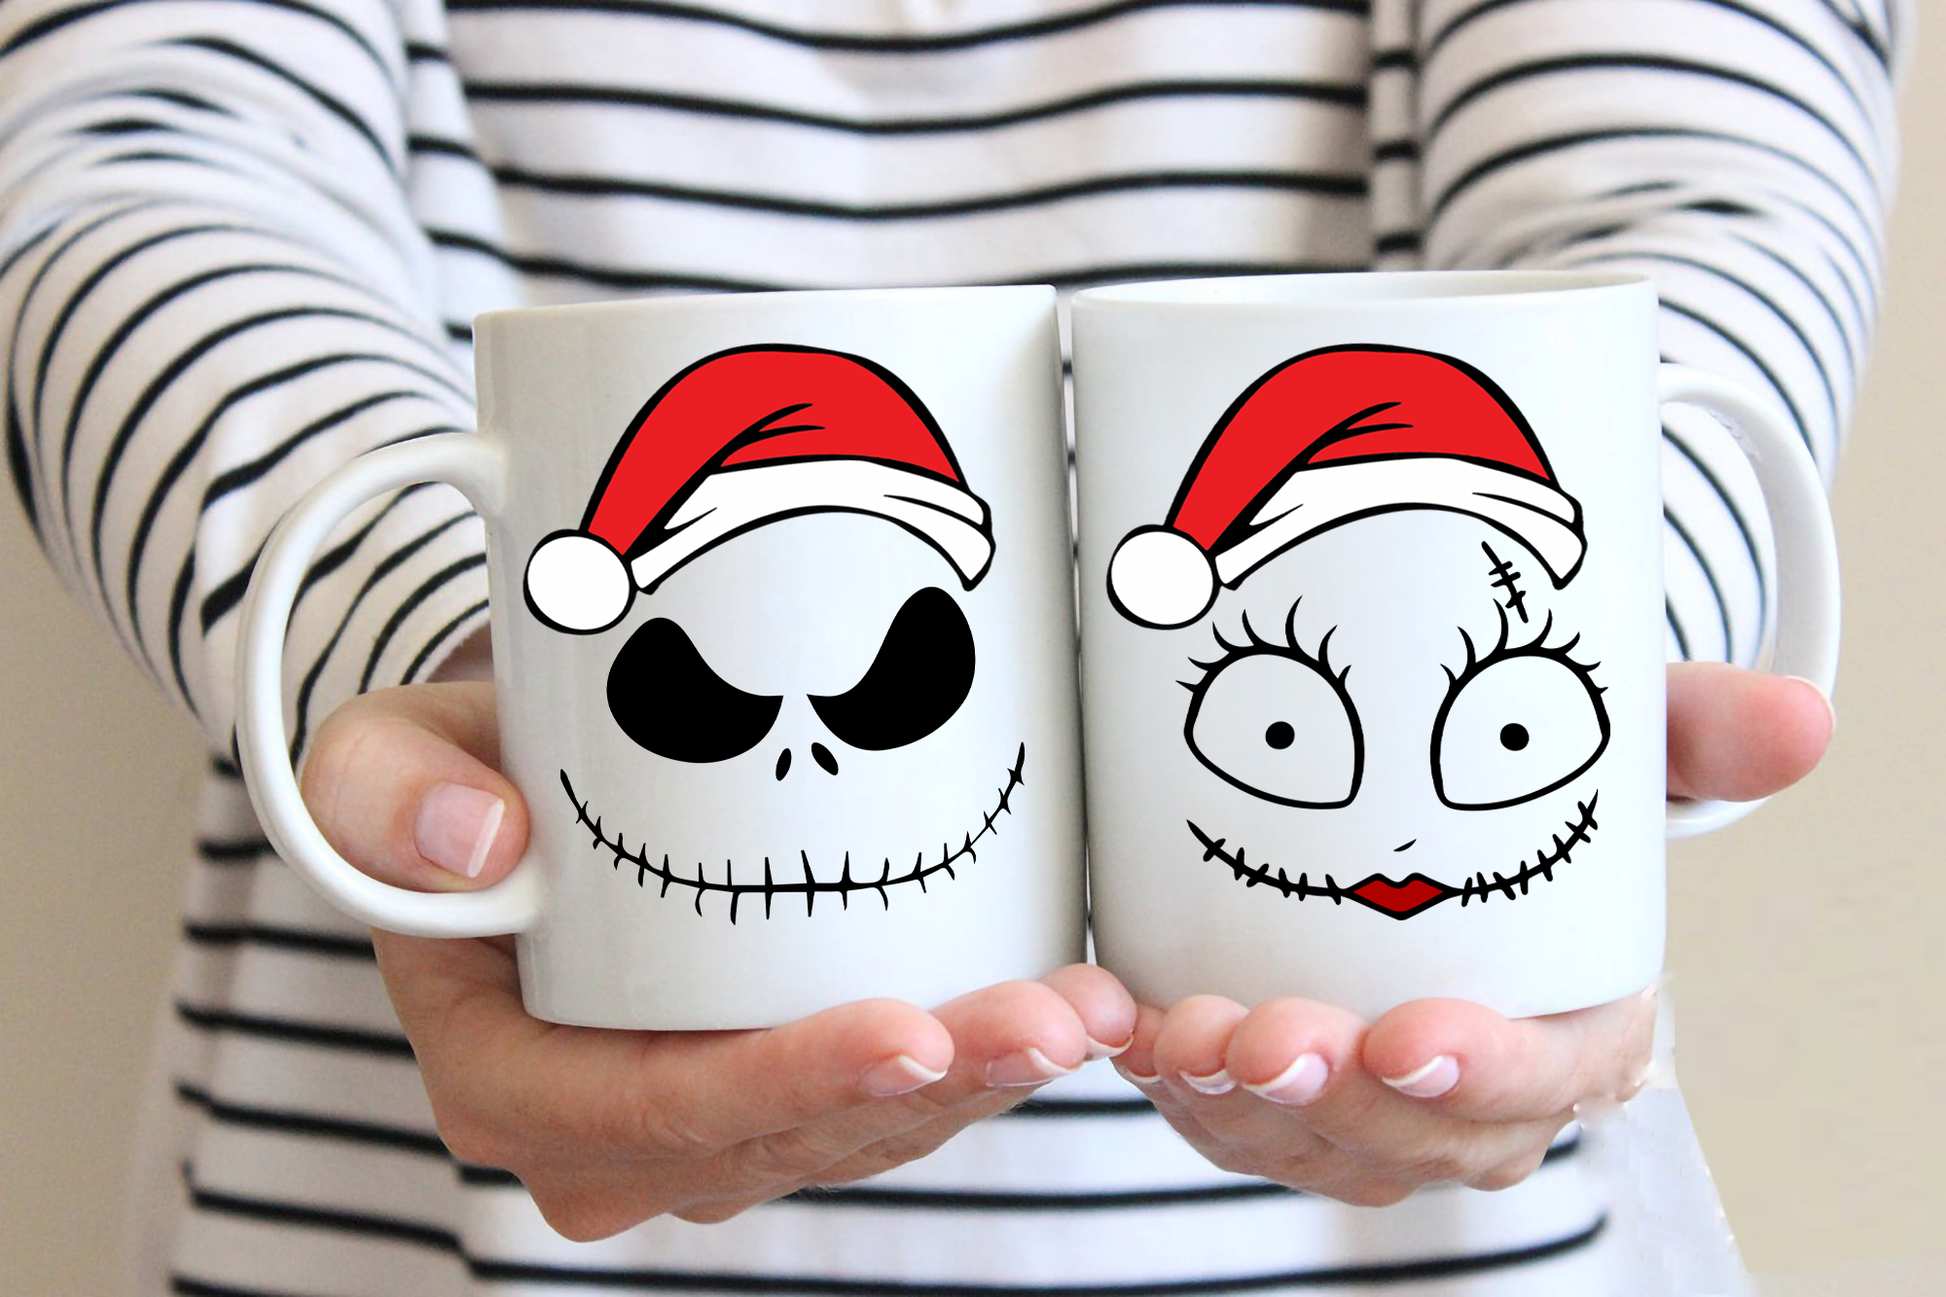 Jack and Sally Christmas Mug - The Nightmare Before Christmas